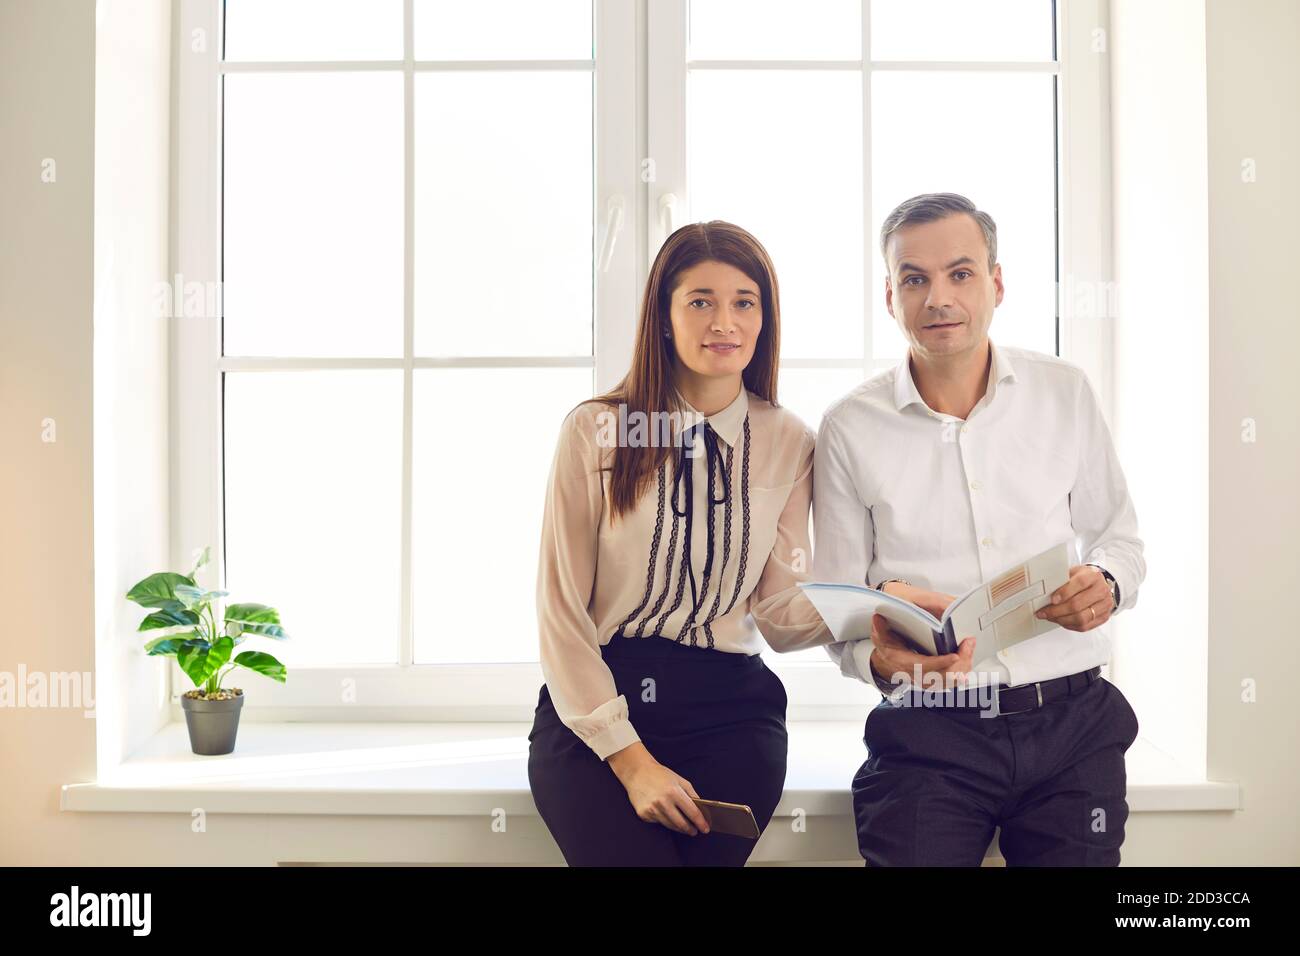 Zwei Personen Geschäftspartner Blick auf Kamera unterbrochen während ihrer Diskussion Stockfoto